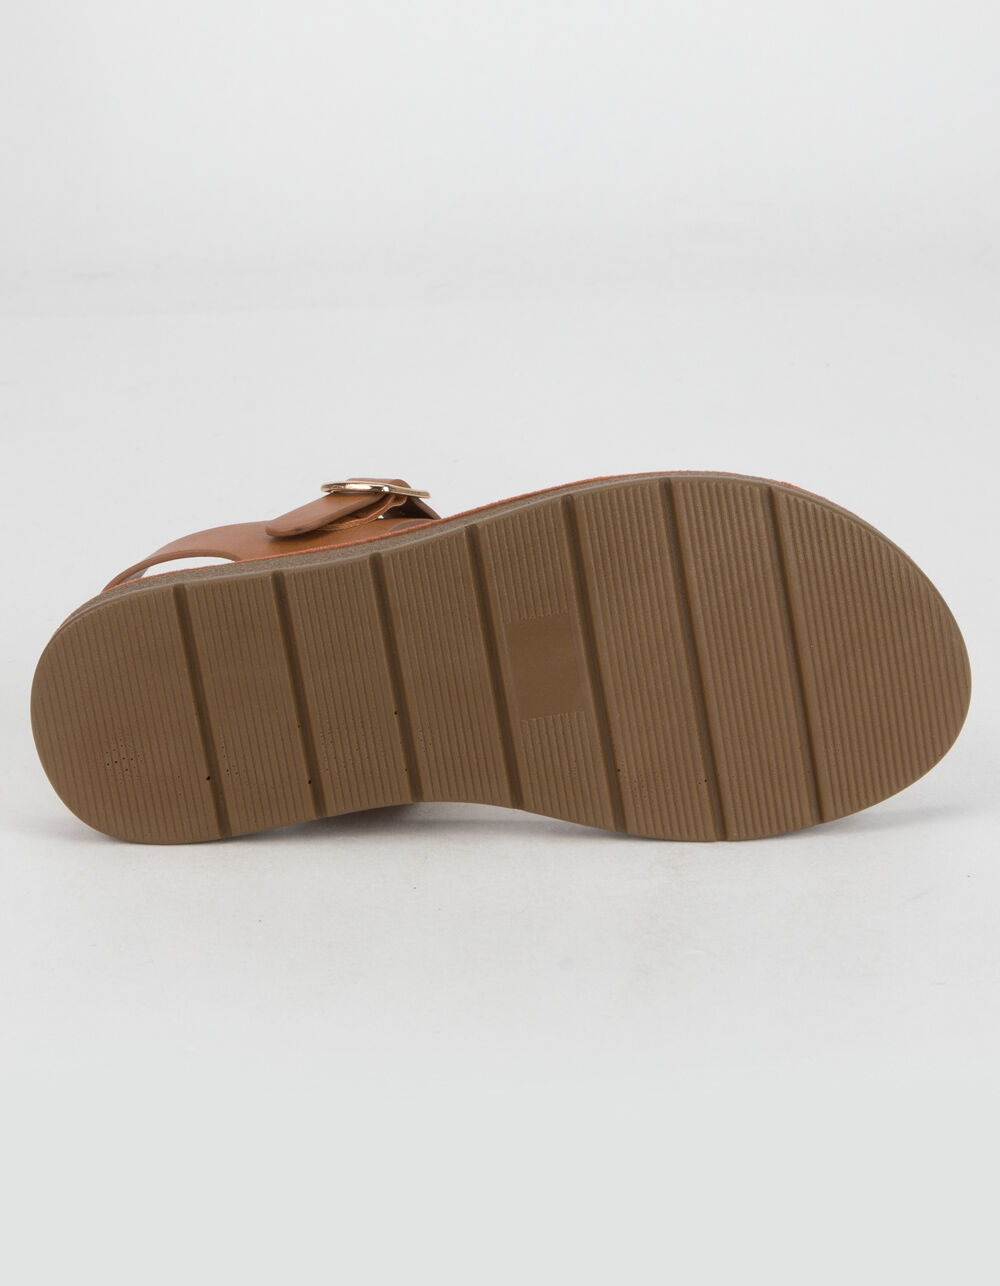 SODA Comfort Ankle Strap Girls Sandals - TAN | Tillys